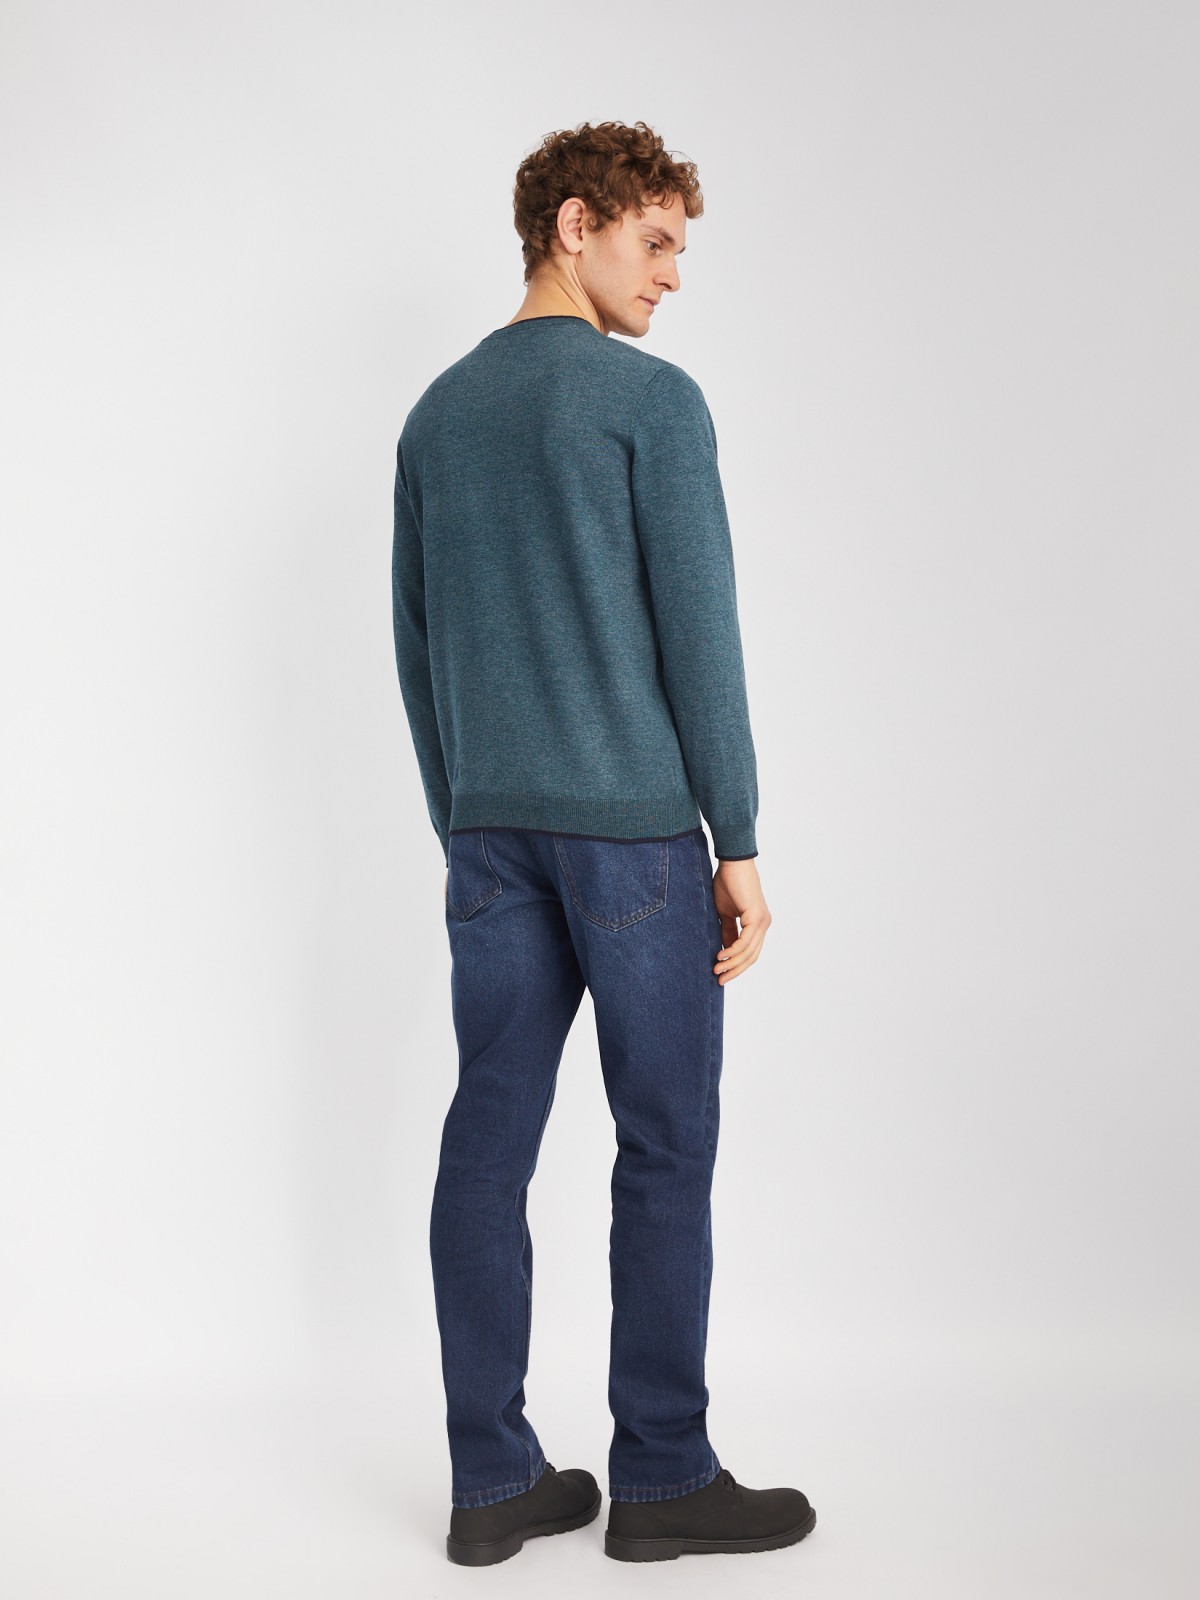 Тонкий трикотажный пуловер с длинным рукавом zolla 014116101082, цвет темно-бирюзовый, размер M - фото 6